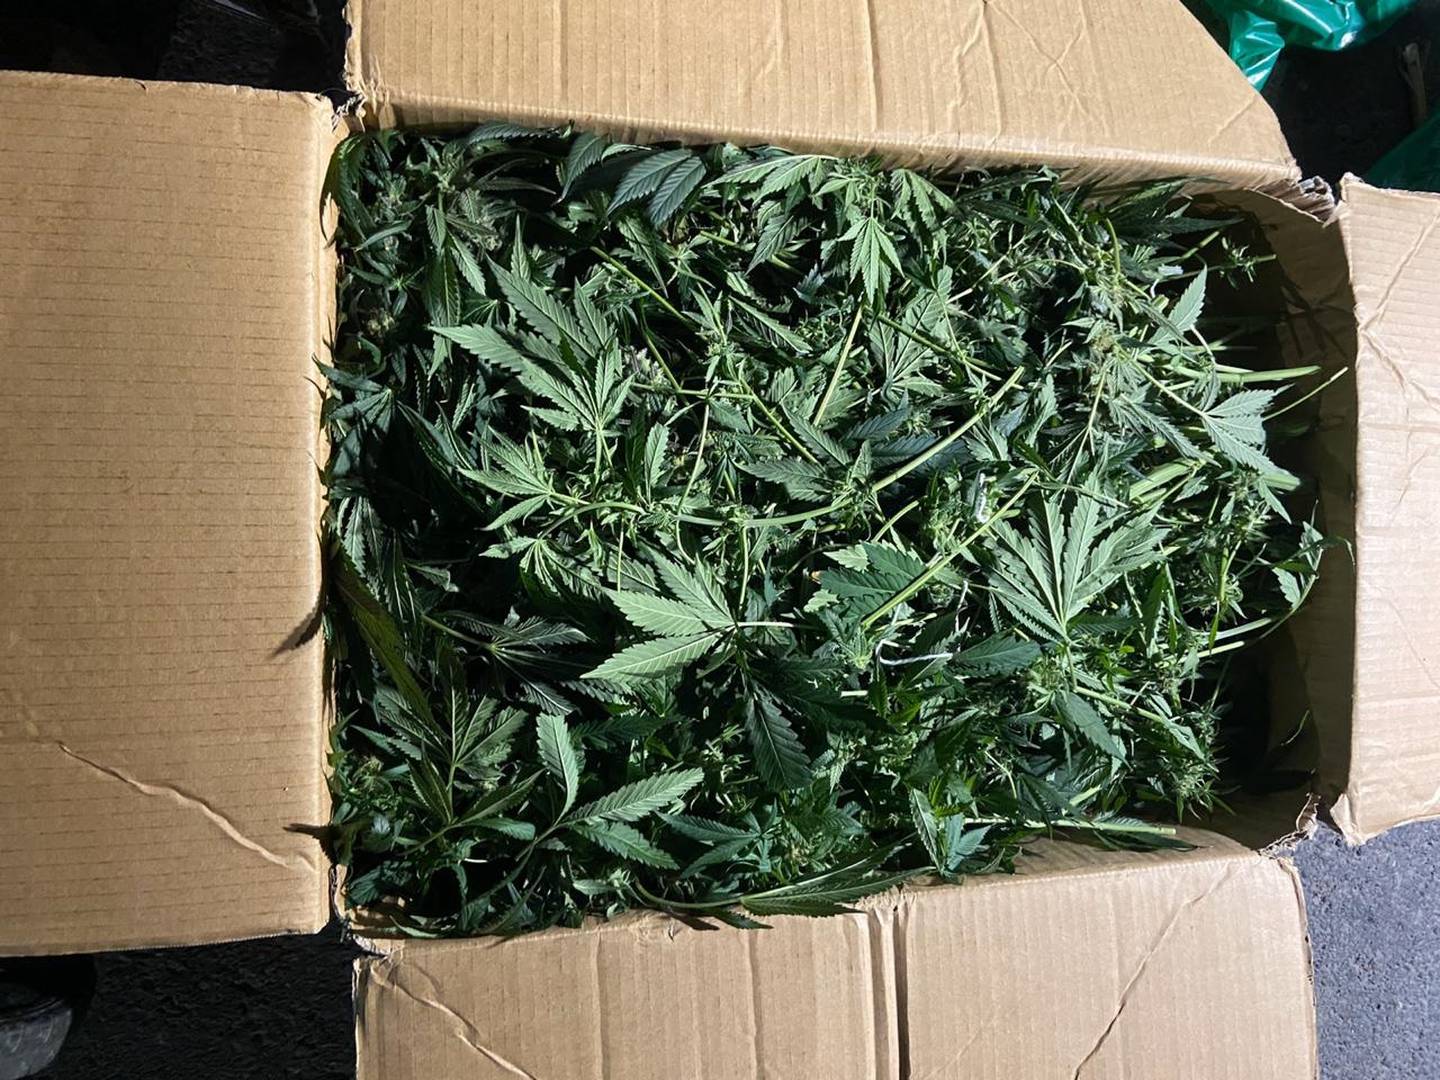 Al ser capturados tenían cajas de marihuana lista para ser trasladada. Foto: Cortesía OIJ.